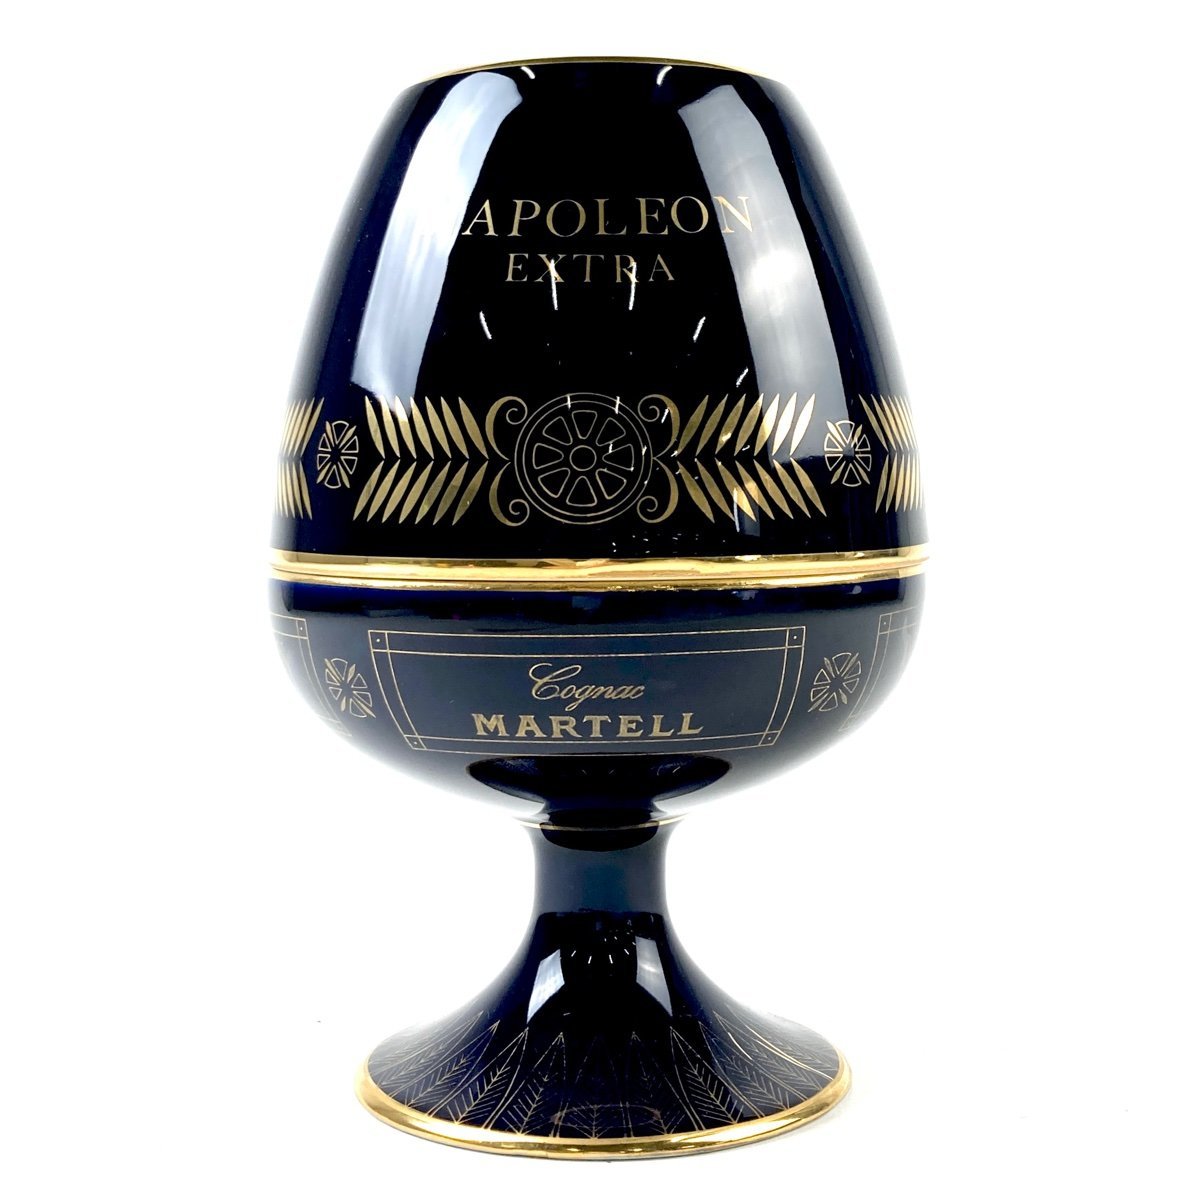  Martell MARTELL Napoleon extra Limo -ju бутылка керамика 700ml бренди коньяк [ старый sake ]